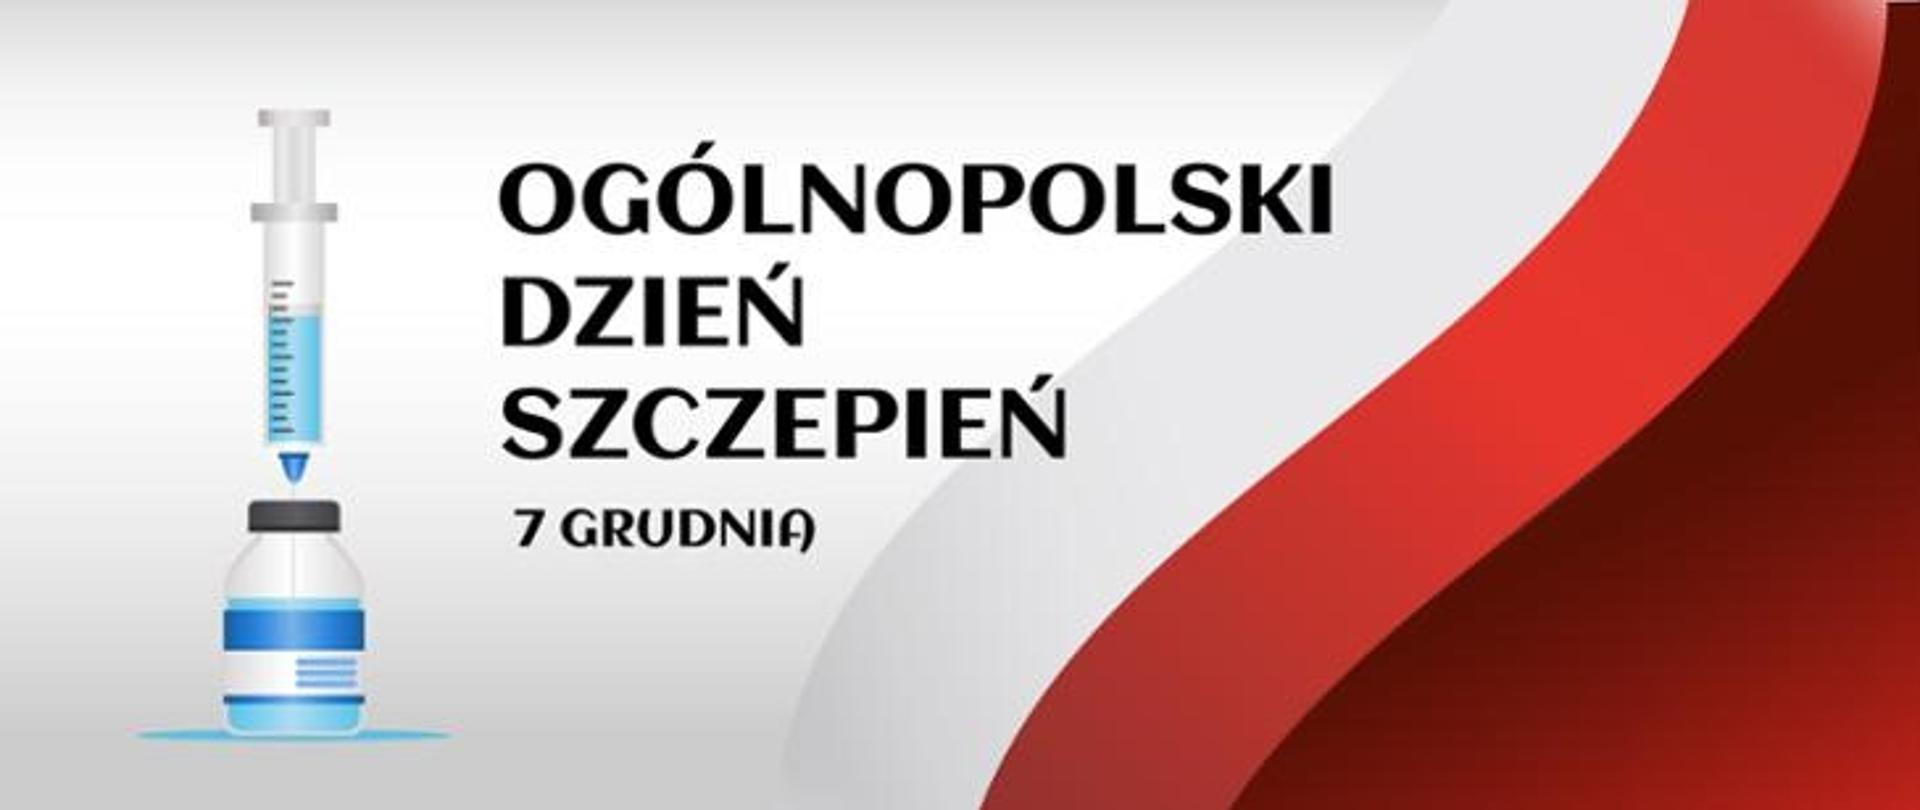 Grafika przedstawiająca barwy (biało-czerwone) flagi Polski, obok strzykawka wbita w butelkę ze szczepionką. Napis: Ogólnopolski Dzień Szczepień 7 grudnia